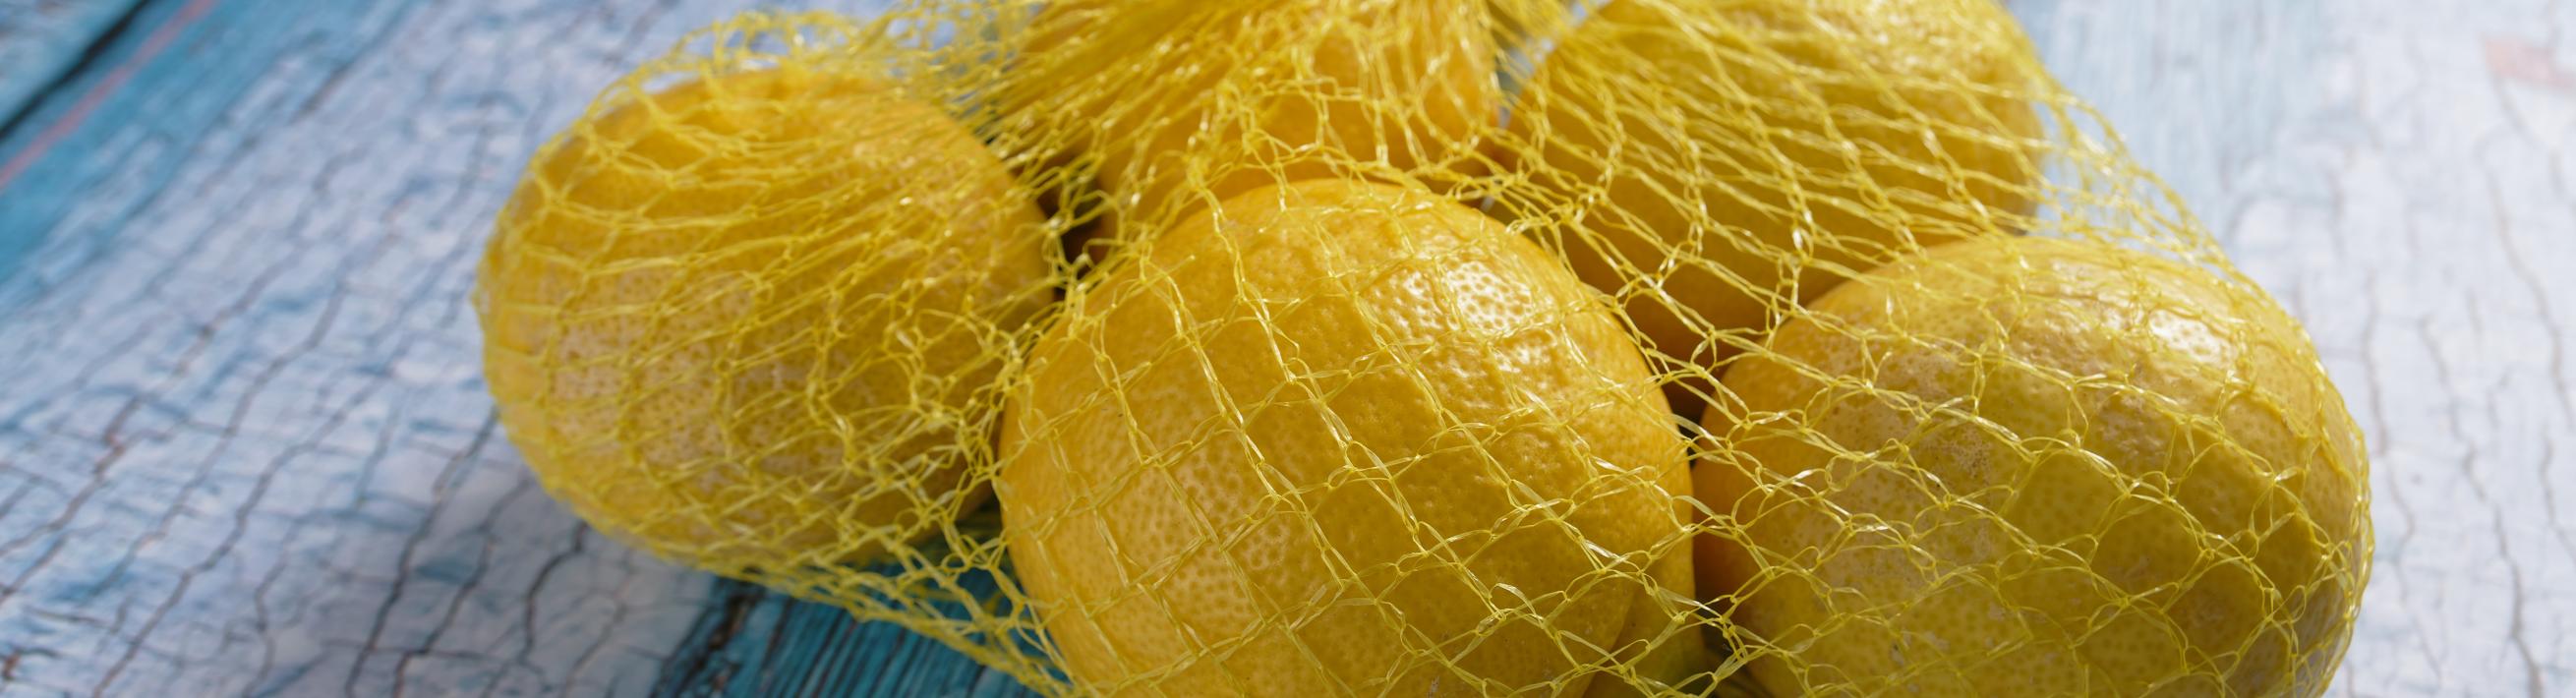 Lemons in a Plastic Bag